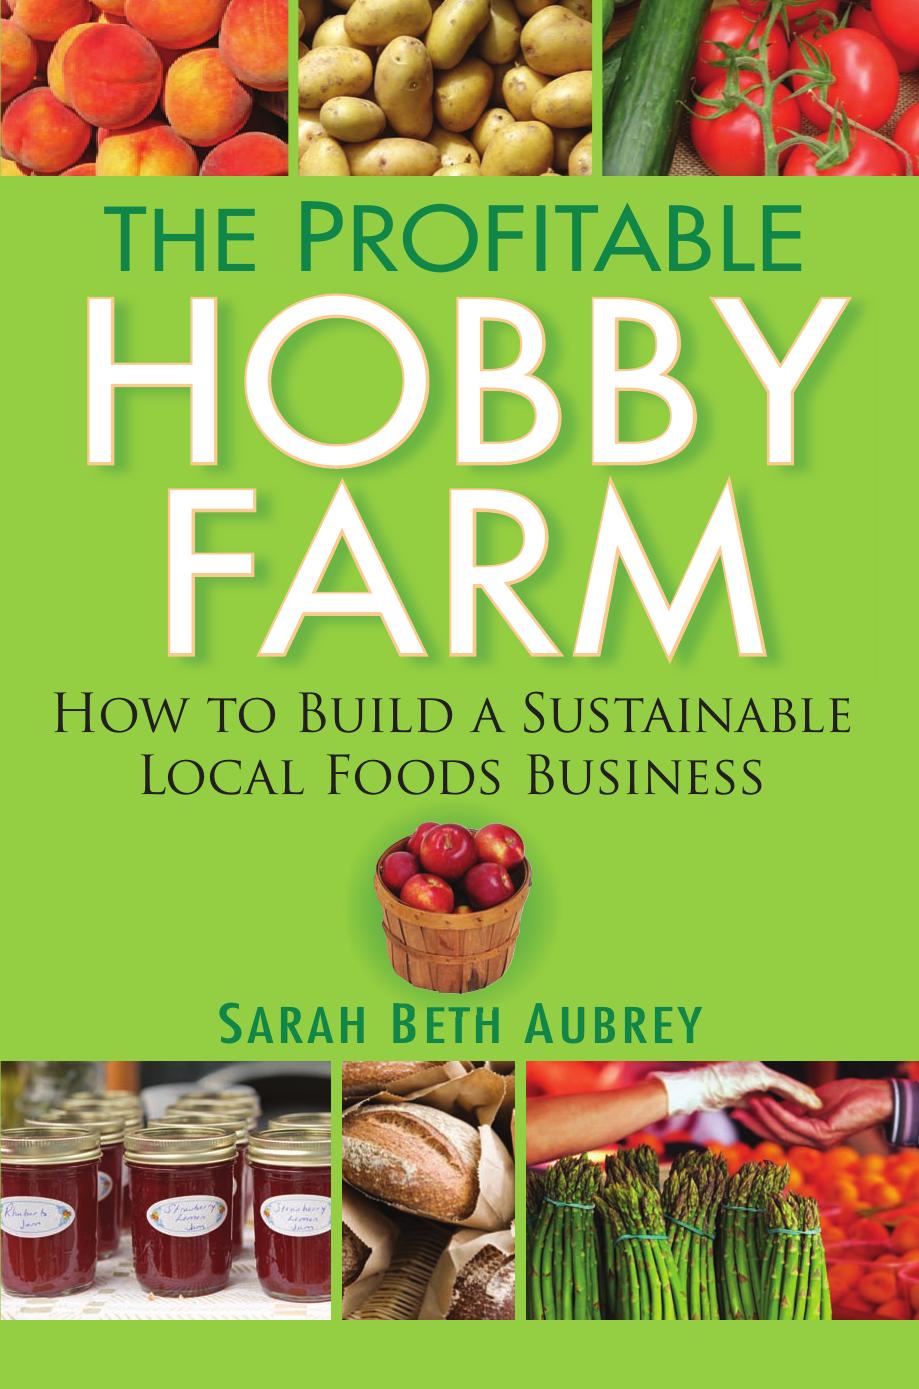 The Profitable Hobby Farm by Sarah Beth Aubrey